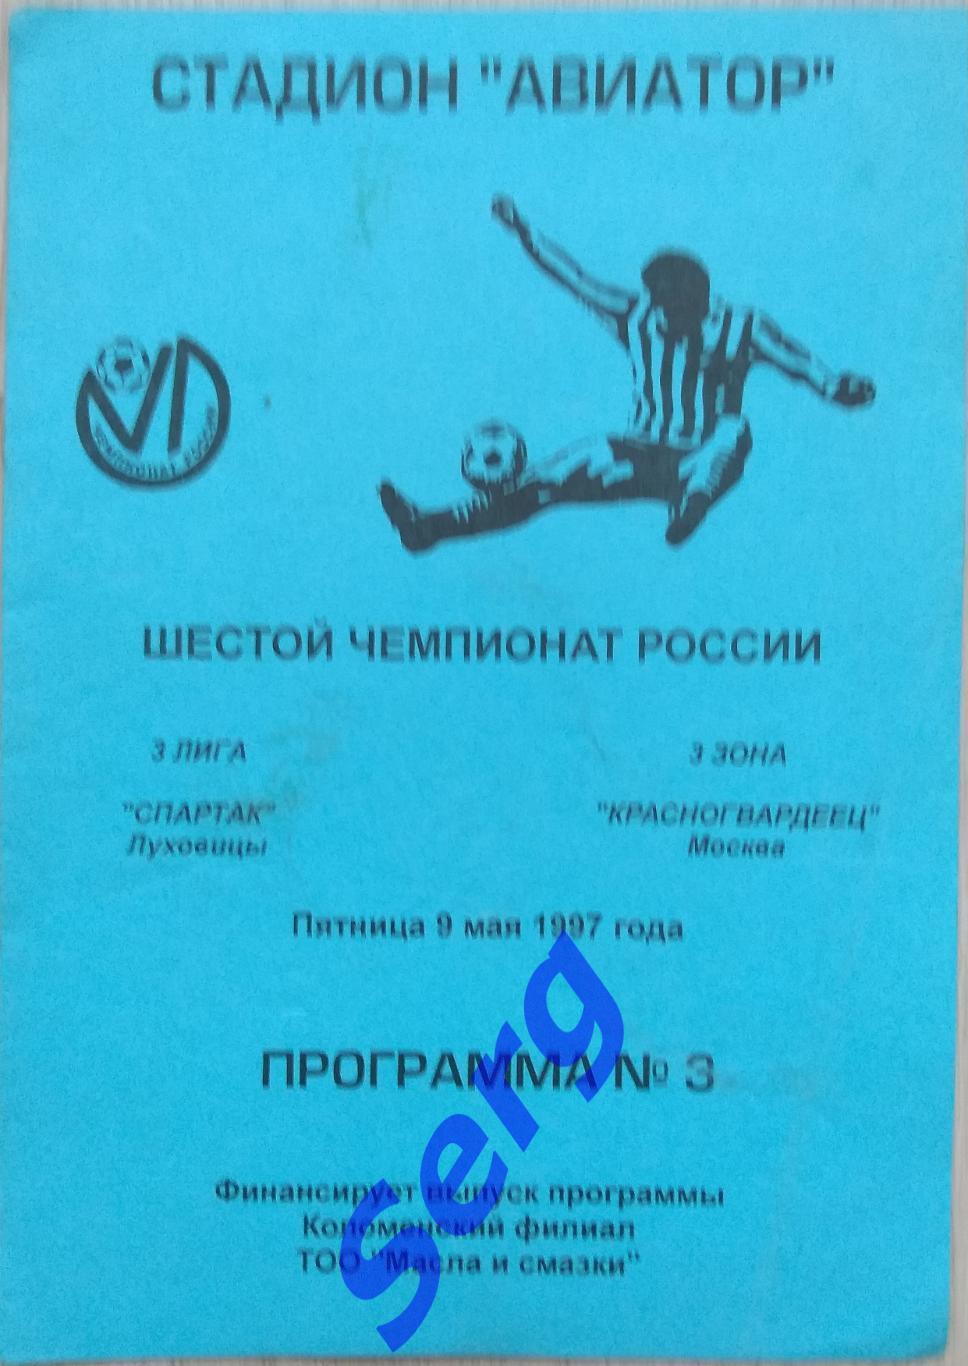 Спартак Луховицы - Красногвардеец Москва - 09 мая 1997 год